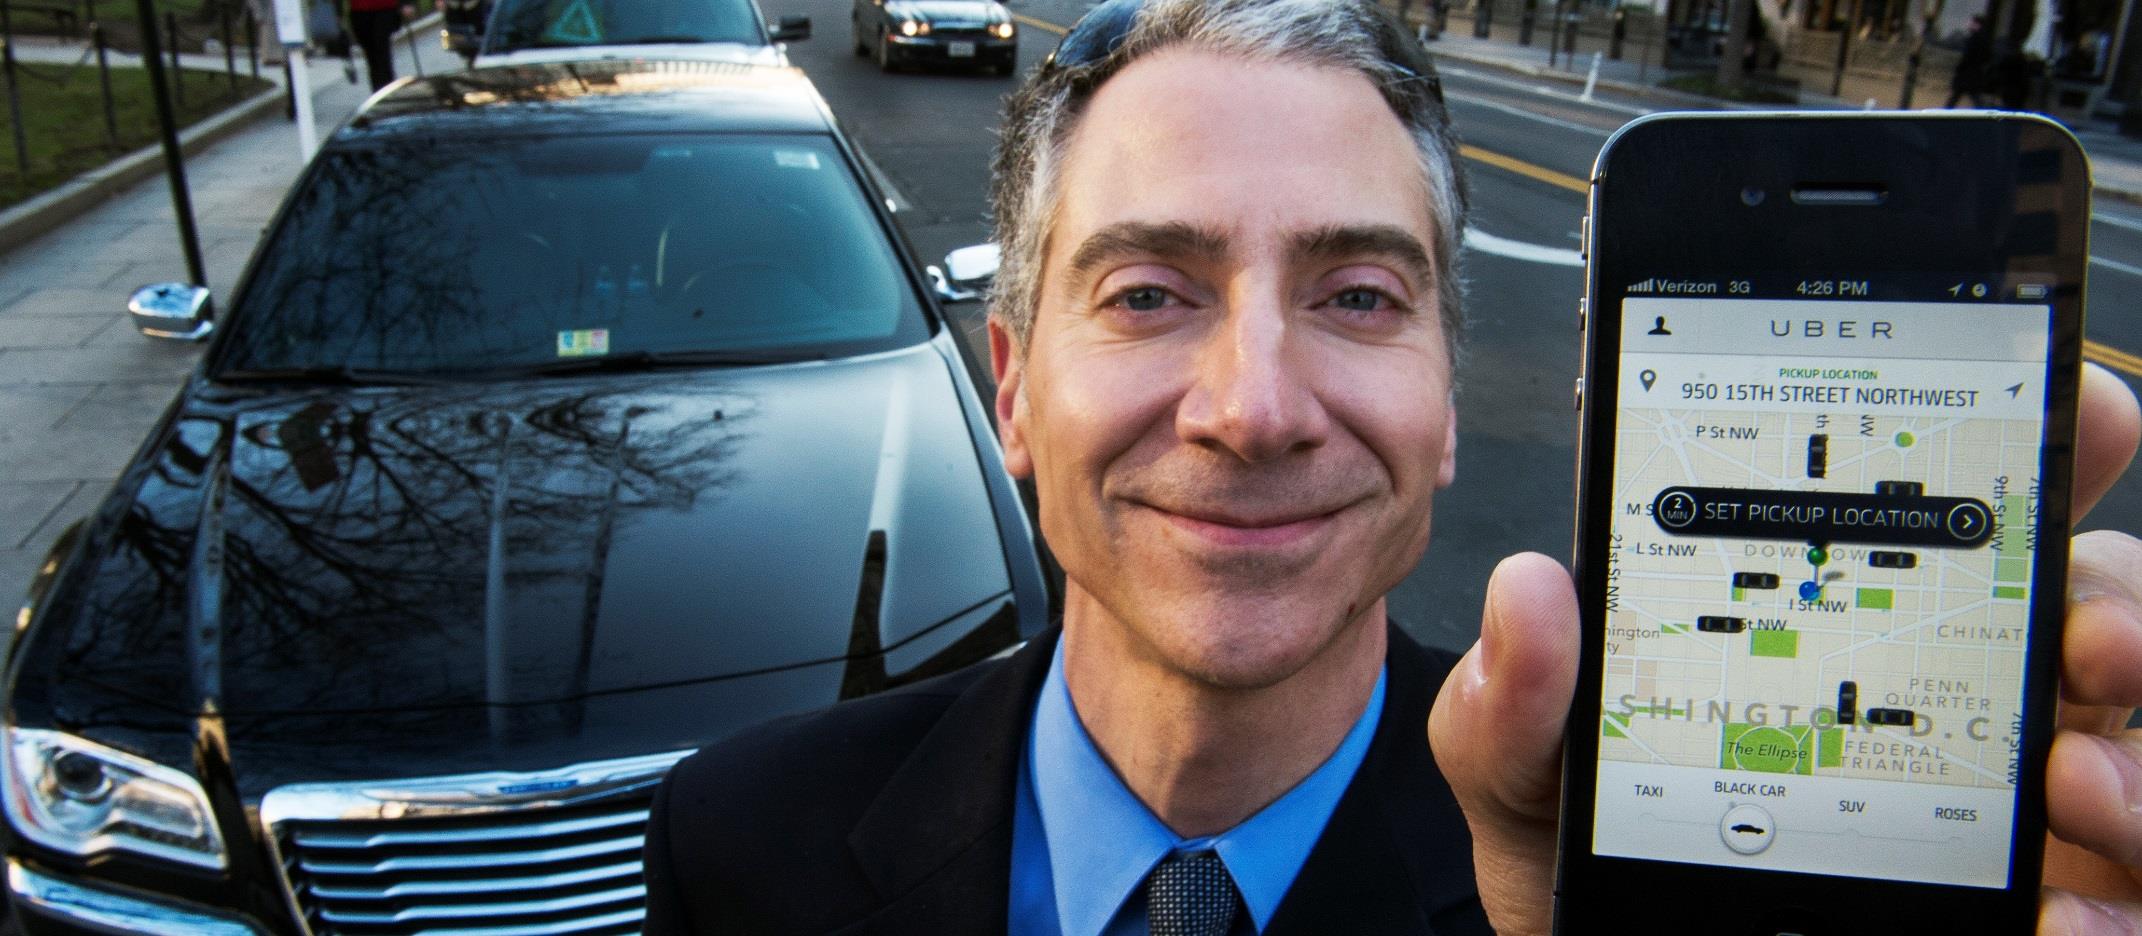 Et lite eksempel fra disrupsjon i en annen bransje: I San Francisco har taxinæringen mistet 65 %